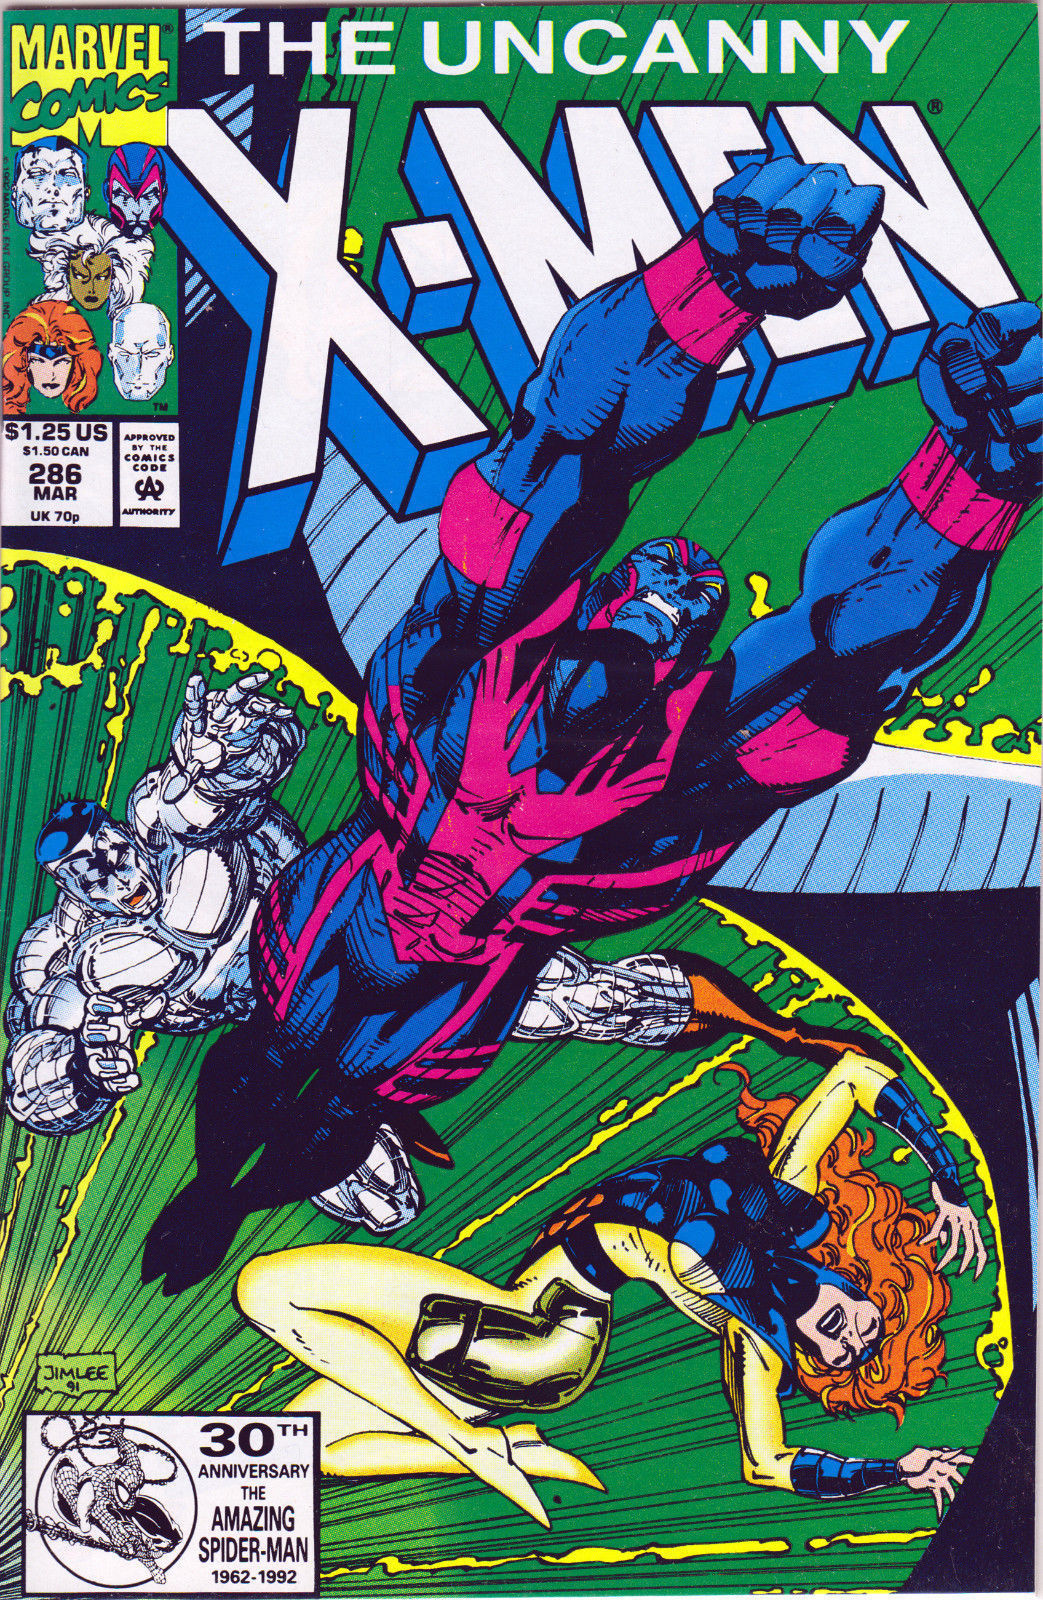 UNCANNY X-MEN #286 (1ST PRINT) COMIC BOOK ~ Jim Lee Cover ~ Marvel Comics